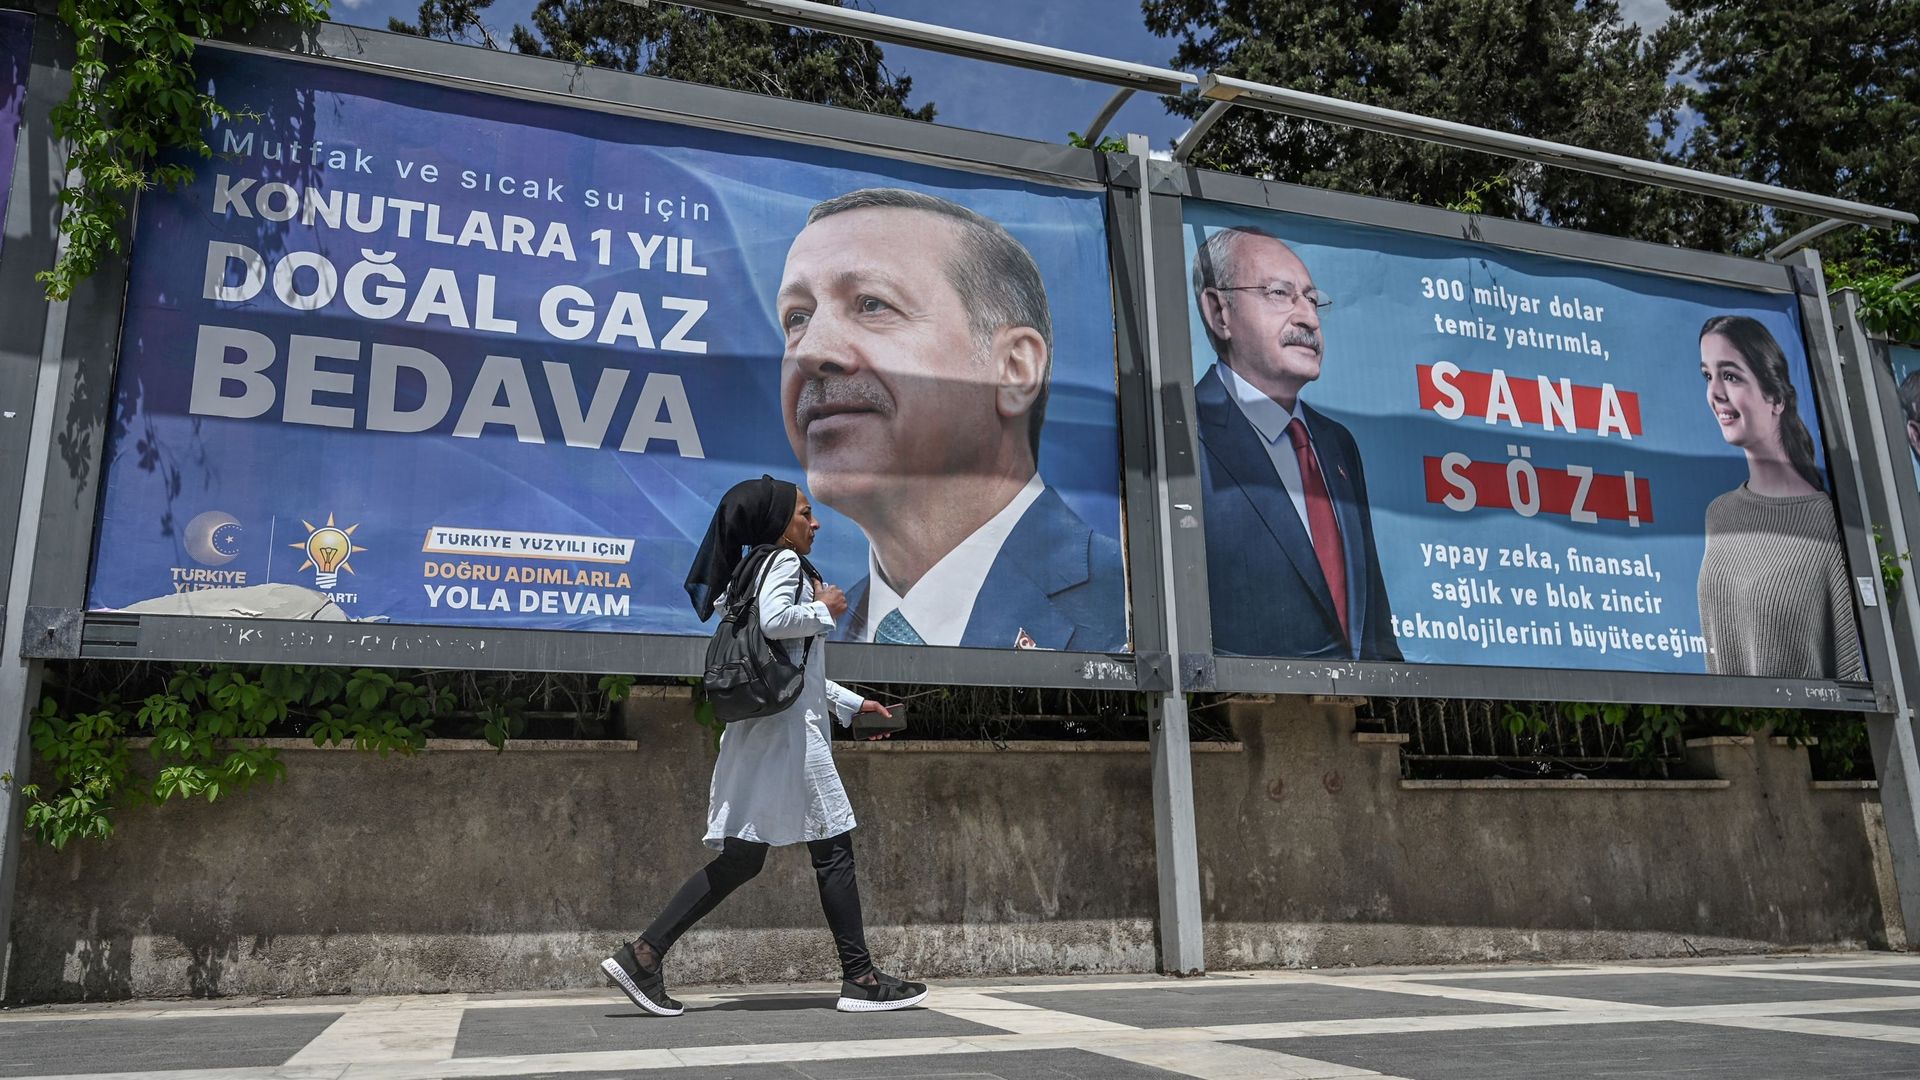 Dos à dos sur ces affiches électorales, les deux adversaires pour la Présidence de la Turquie : Recep Tayyip Erdogan (AKP) et Kemal Kilicdaroglu (CHP – coalition d’opposition).